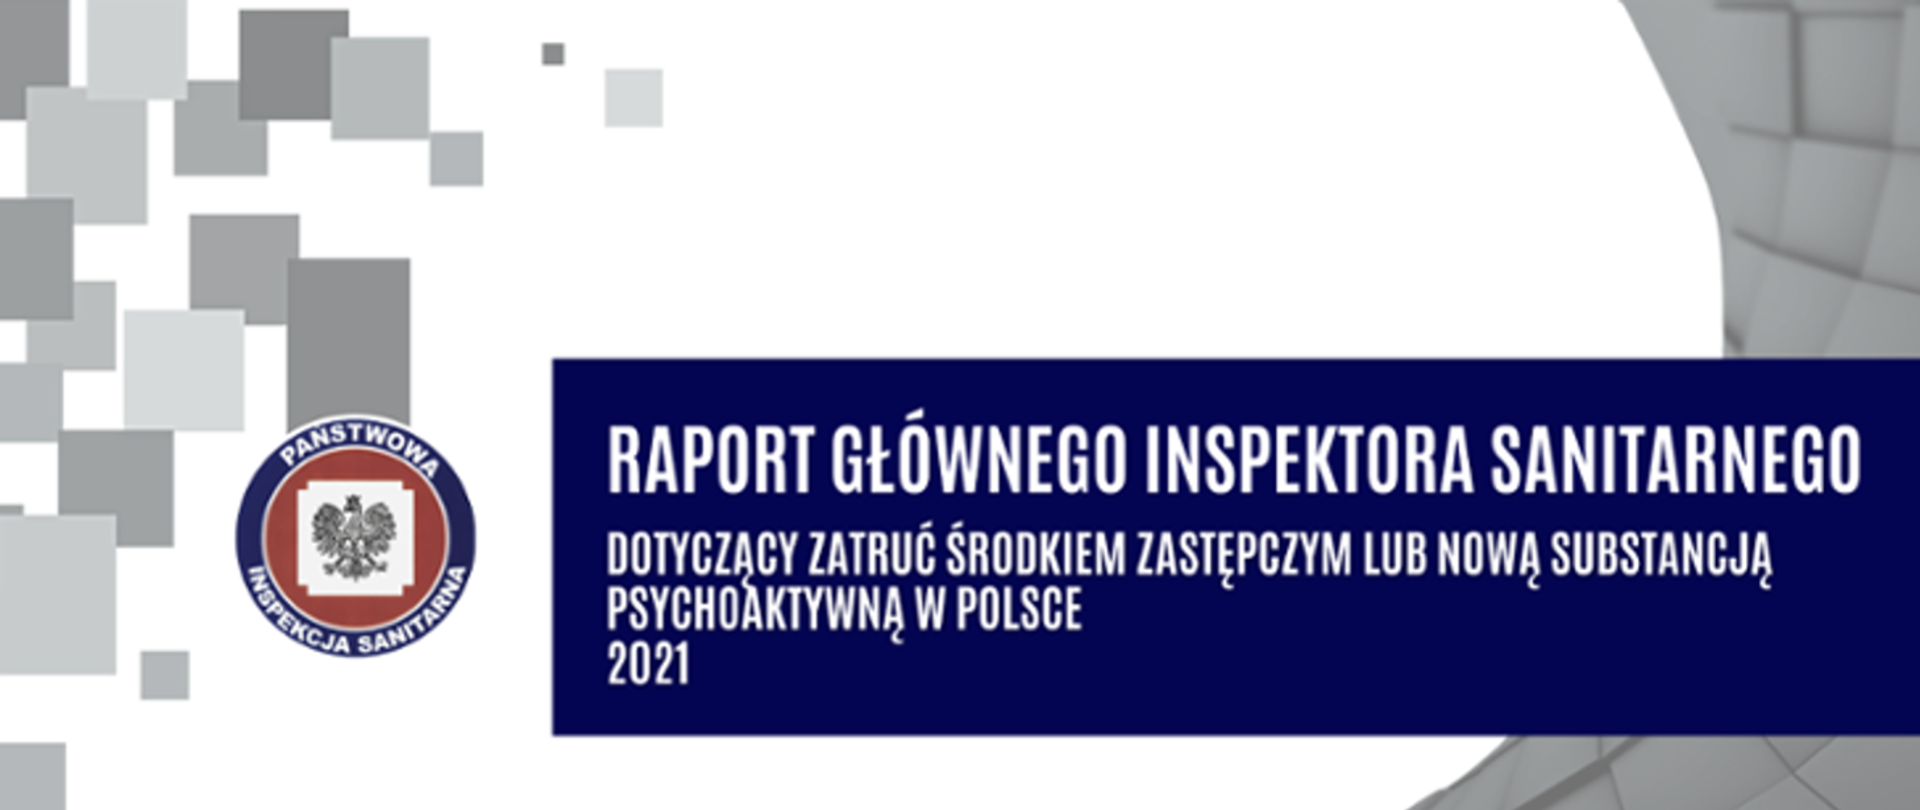 Plakat z napisem Raport GIS dotyczący zatruć środkiem zastępczym lub nową substancją psychoaktywną w Polsce